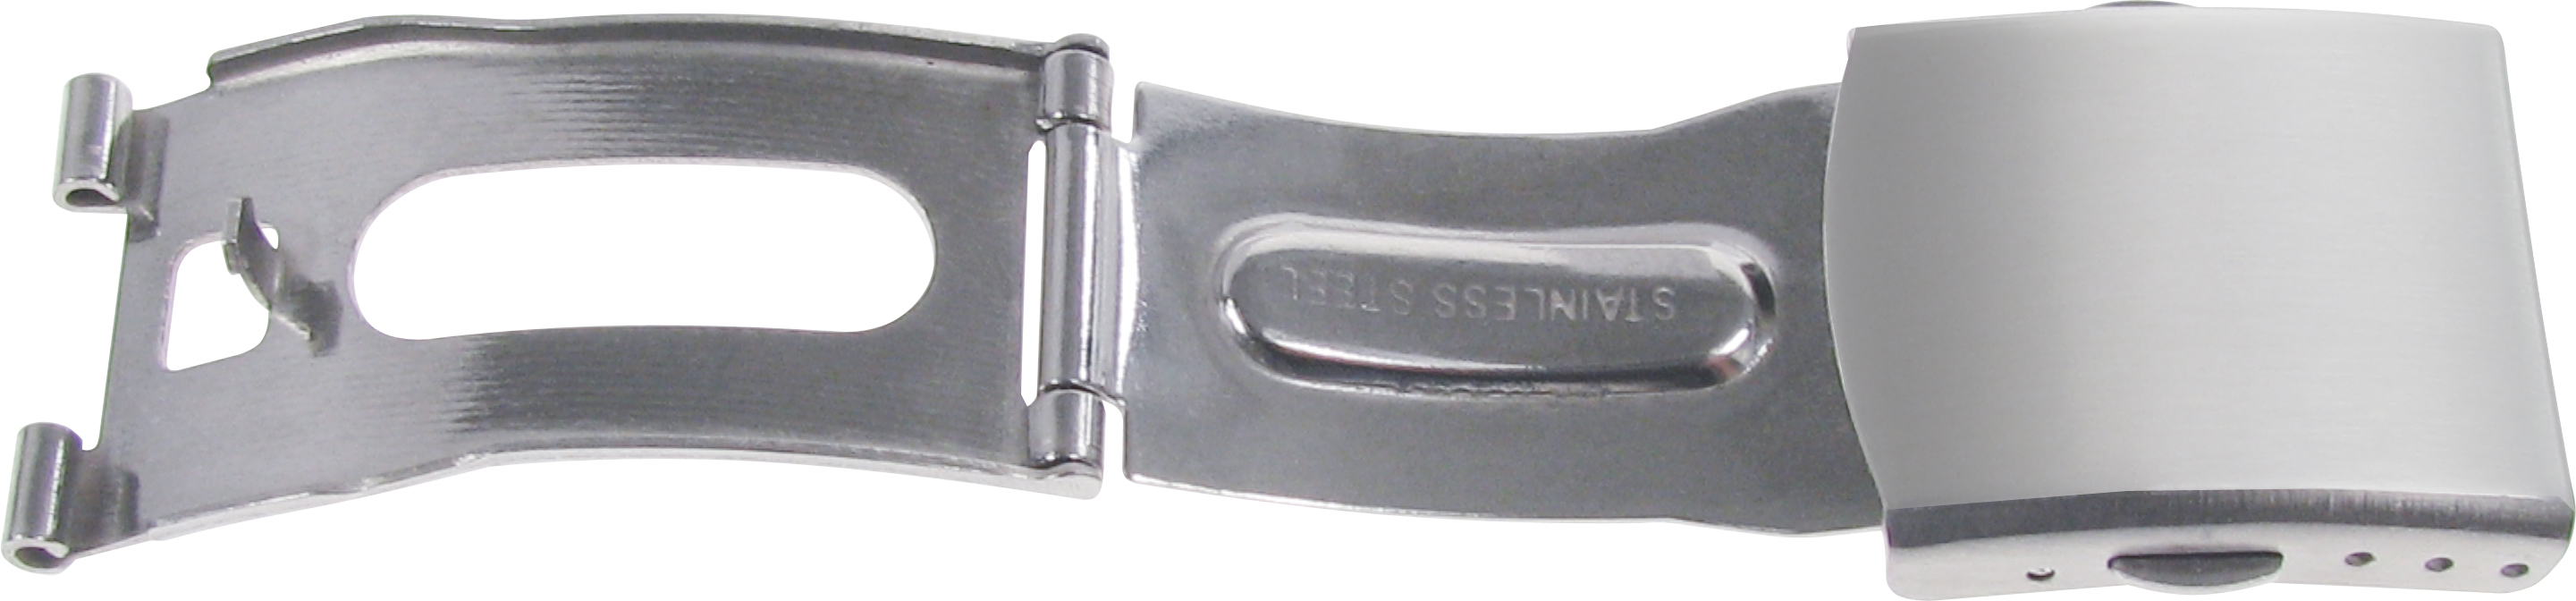 Faltschließe Edelstahl 16mm, Ansatz 10mm Stahl mattiert mit 2 Drückern